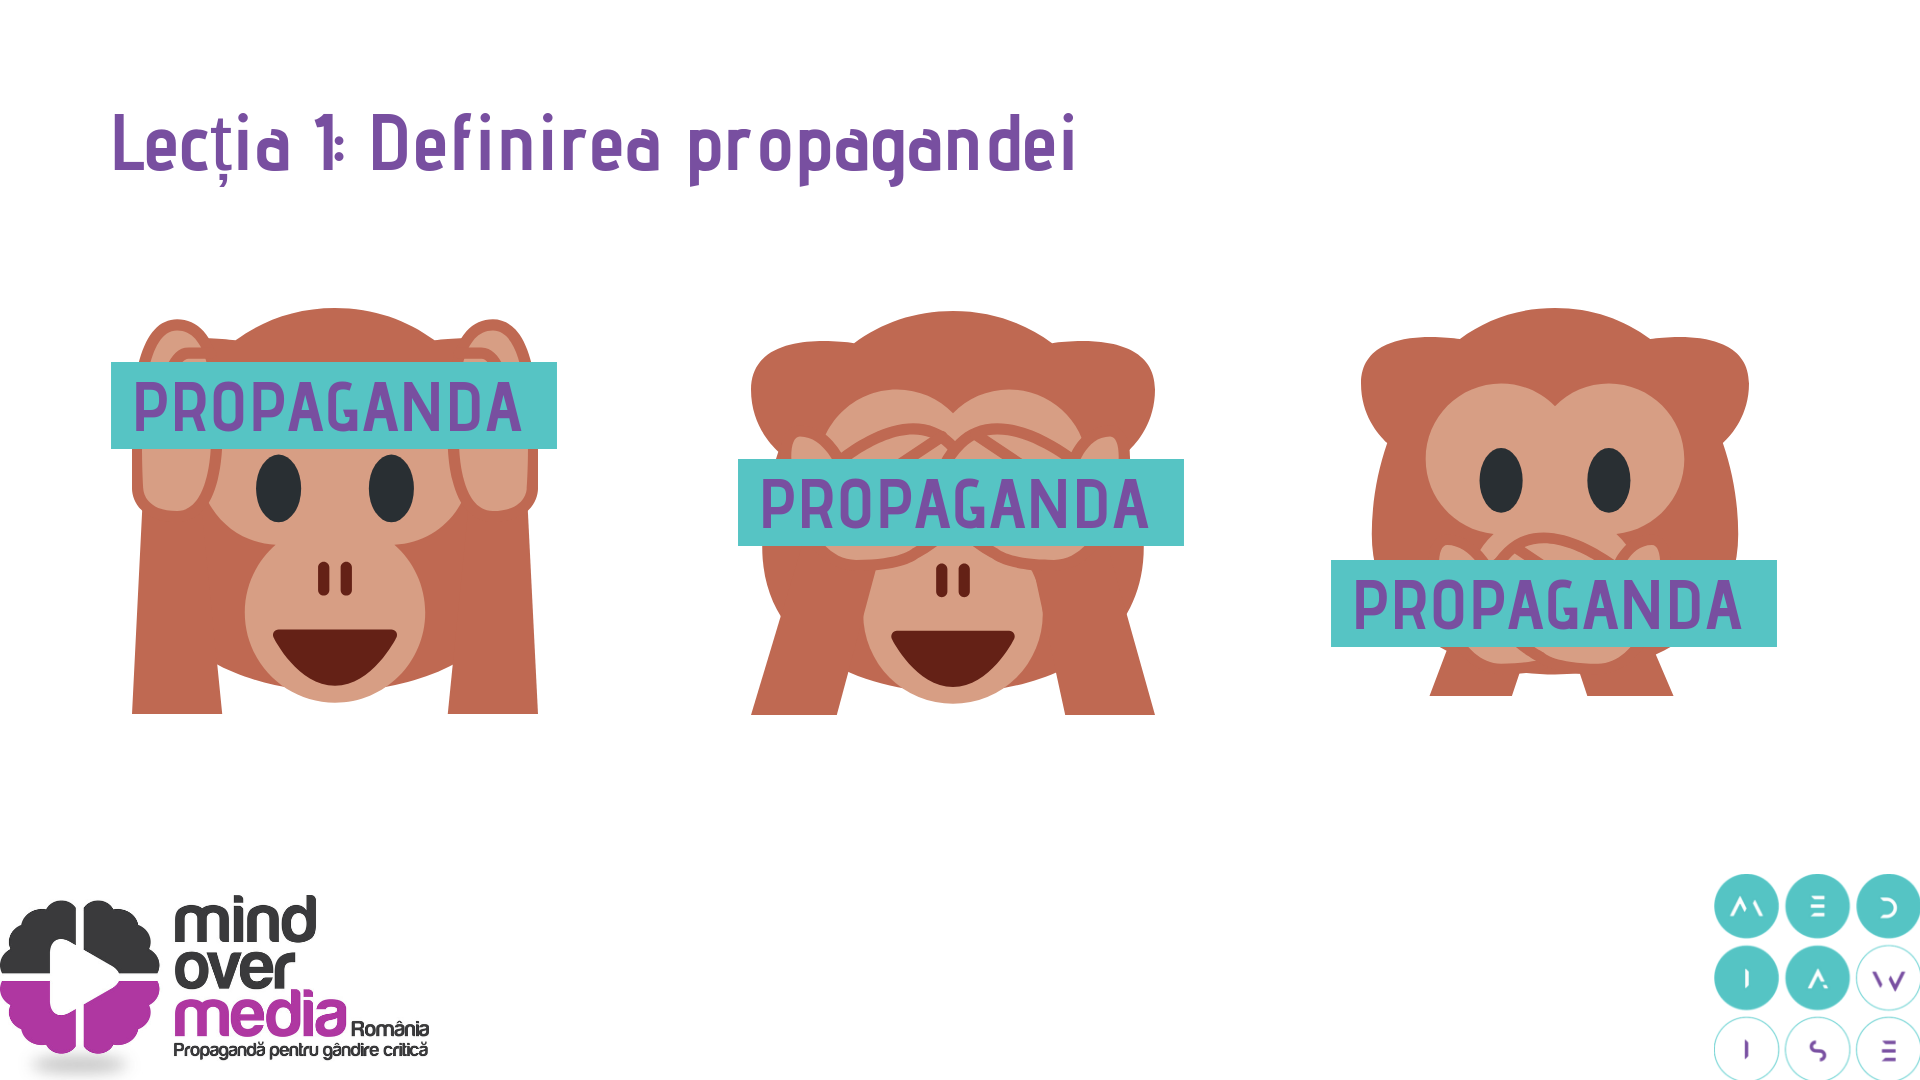 Lectia 1 – Definirea propagandei